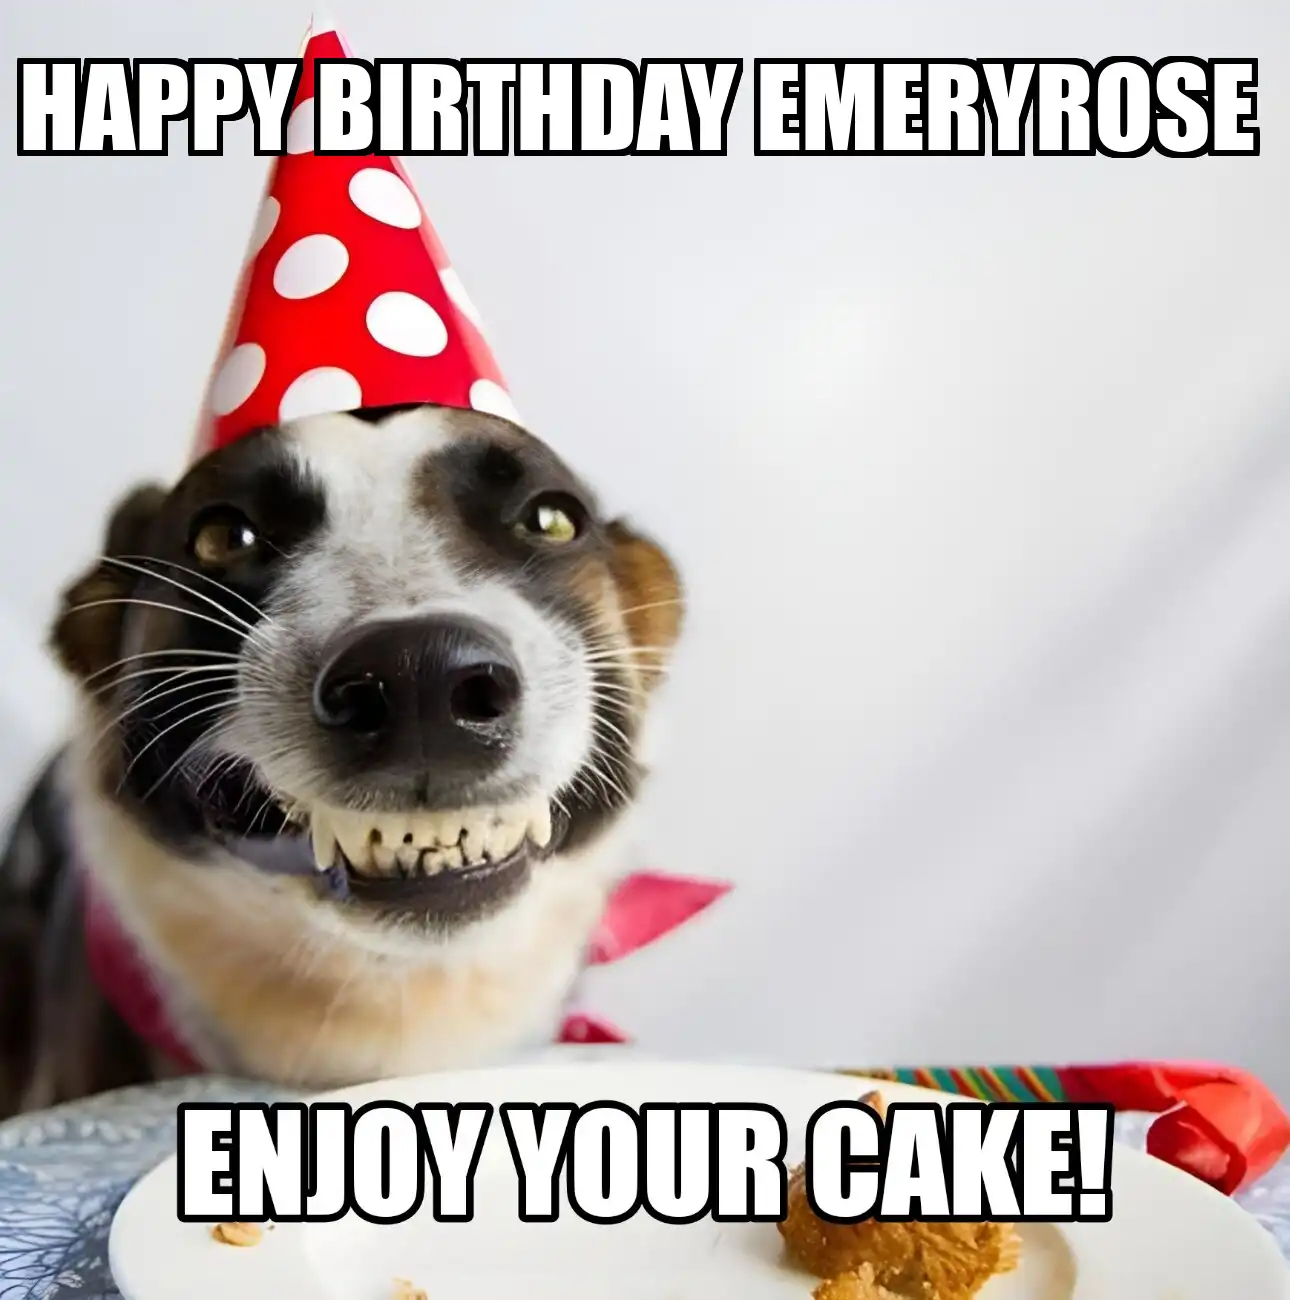 Happy Birthday Emeryrose Enjoy Your Cake Dog Meme